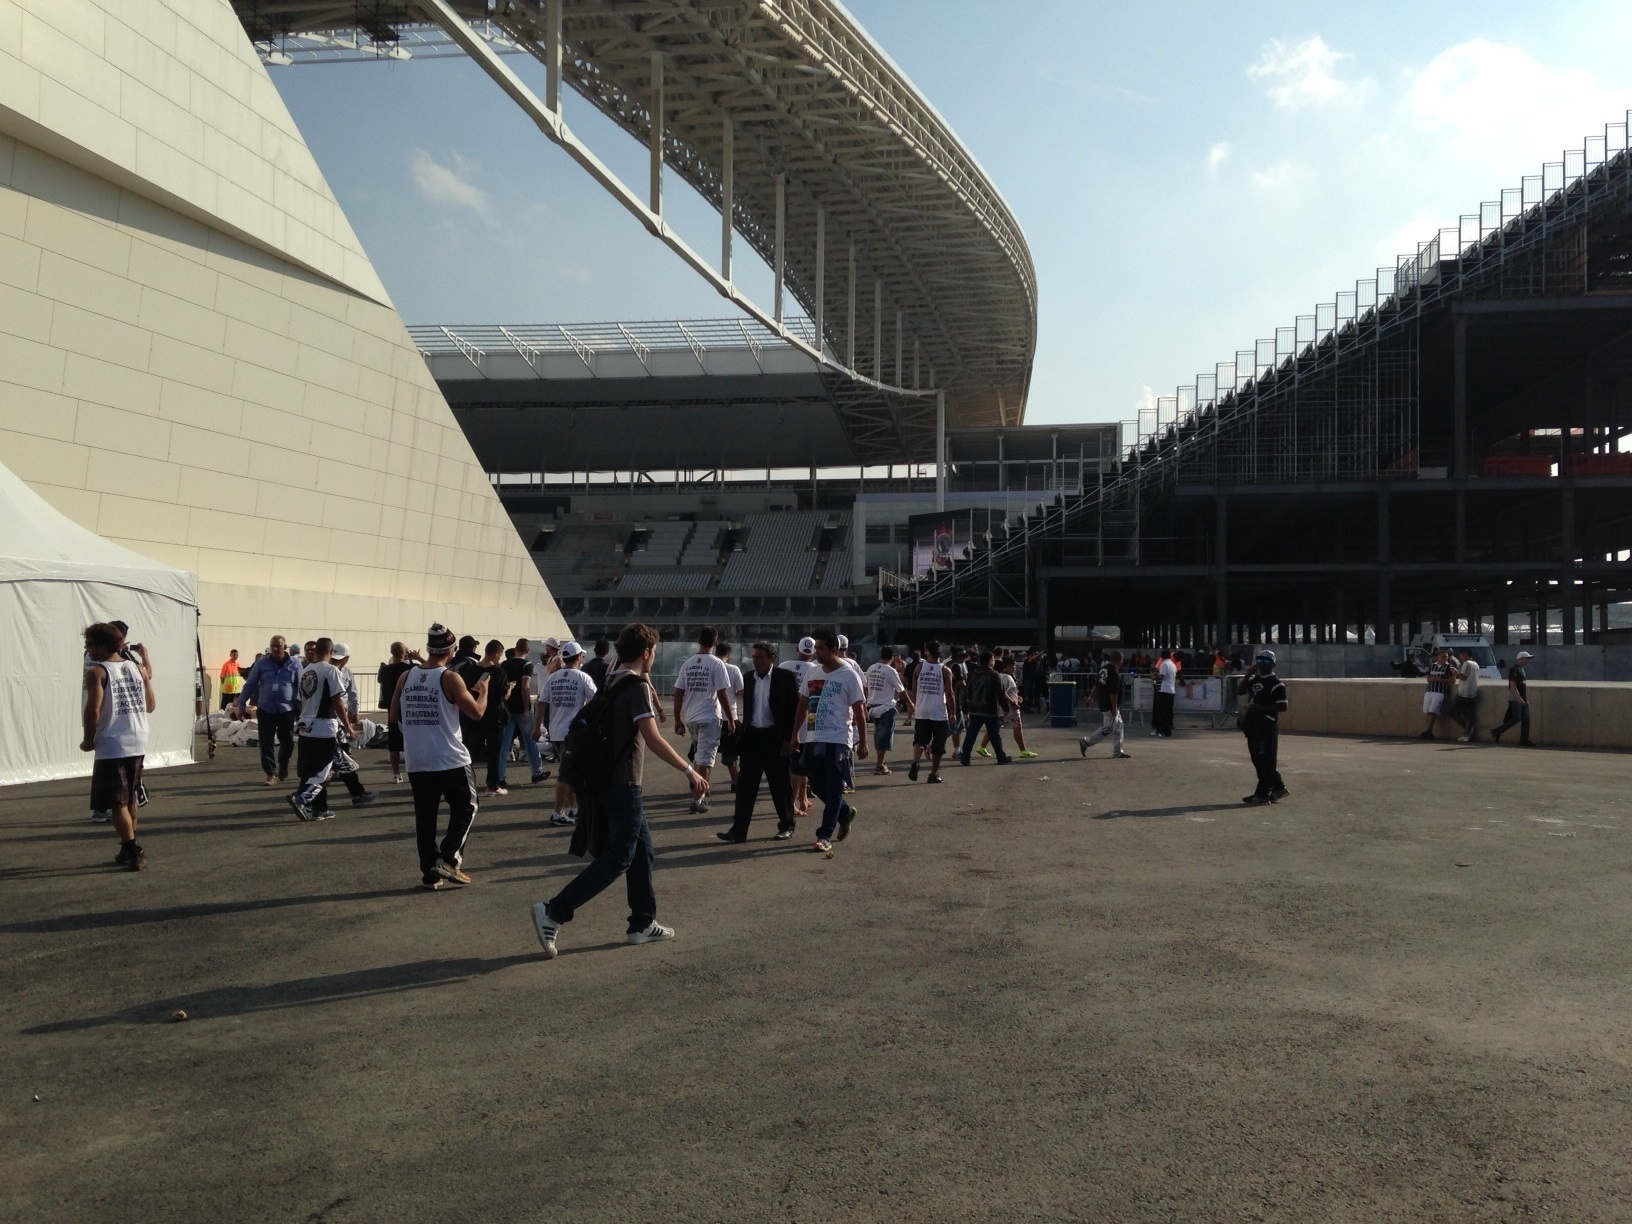 18.mai.2014 - Milhares de torcedores circularam pelo terreno do Itaquerão no dia da inauguração. Muitos deles estavam sem ingressos.